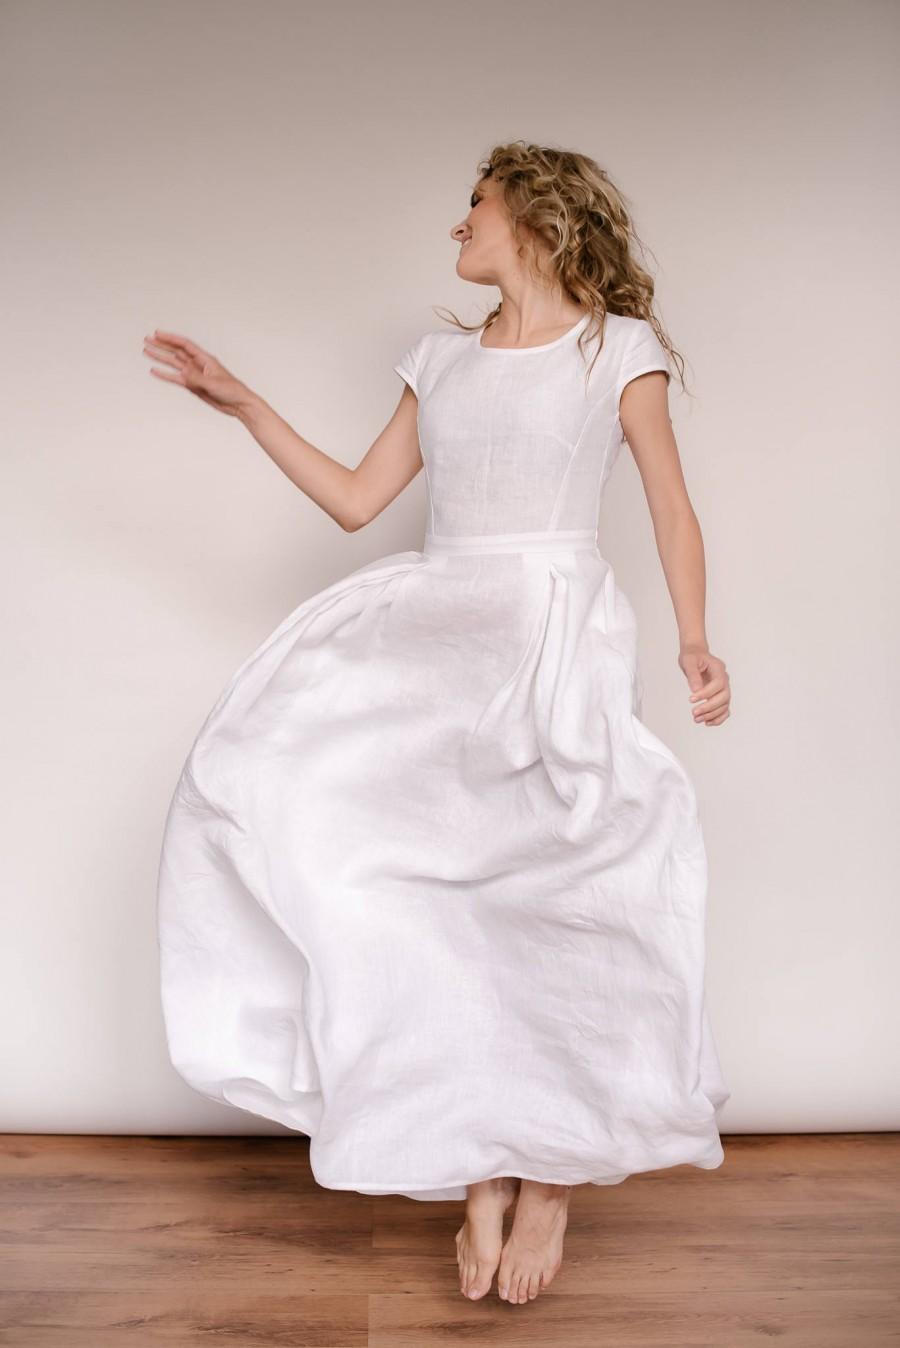 Hochzeit - Linen Wedding Dress, Simple Wedding Dress, Minimalist Wedding Dress, Linen Clothing, Modest Wedding Dress, Casual Wedding Dress, White Linen